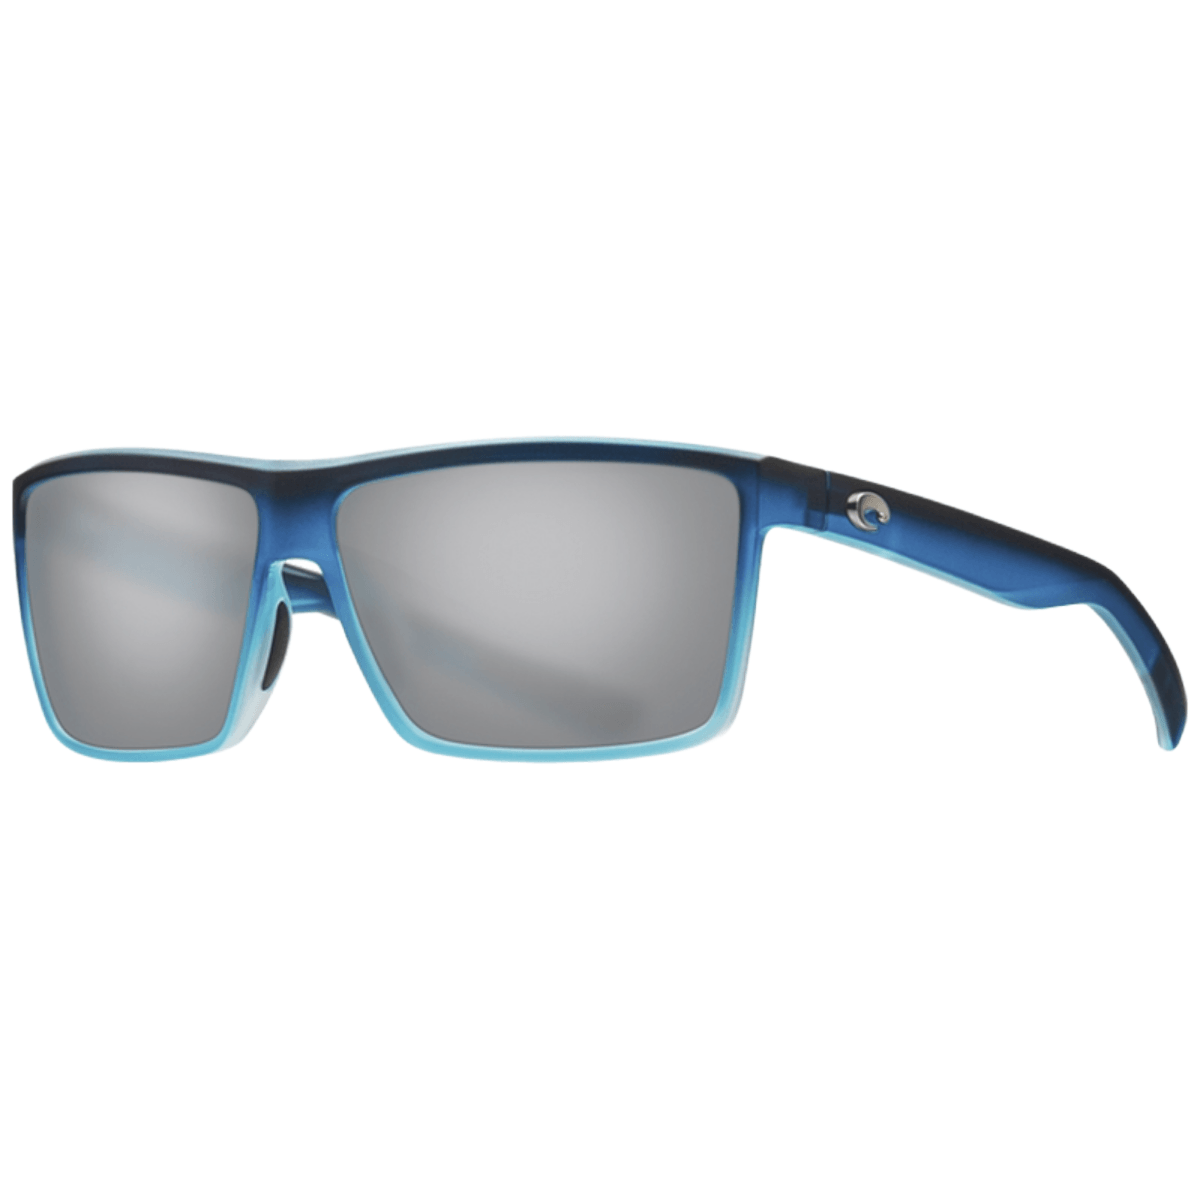 Costa Del Mar Rinconcito Sunglasses - Bobwards.com